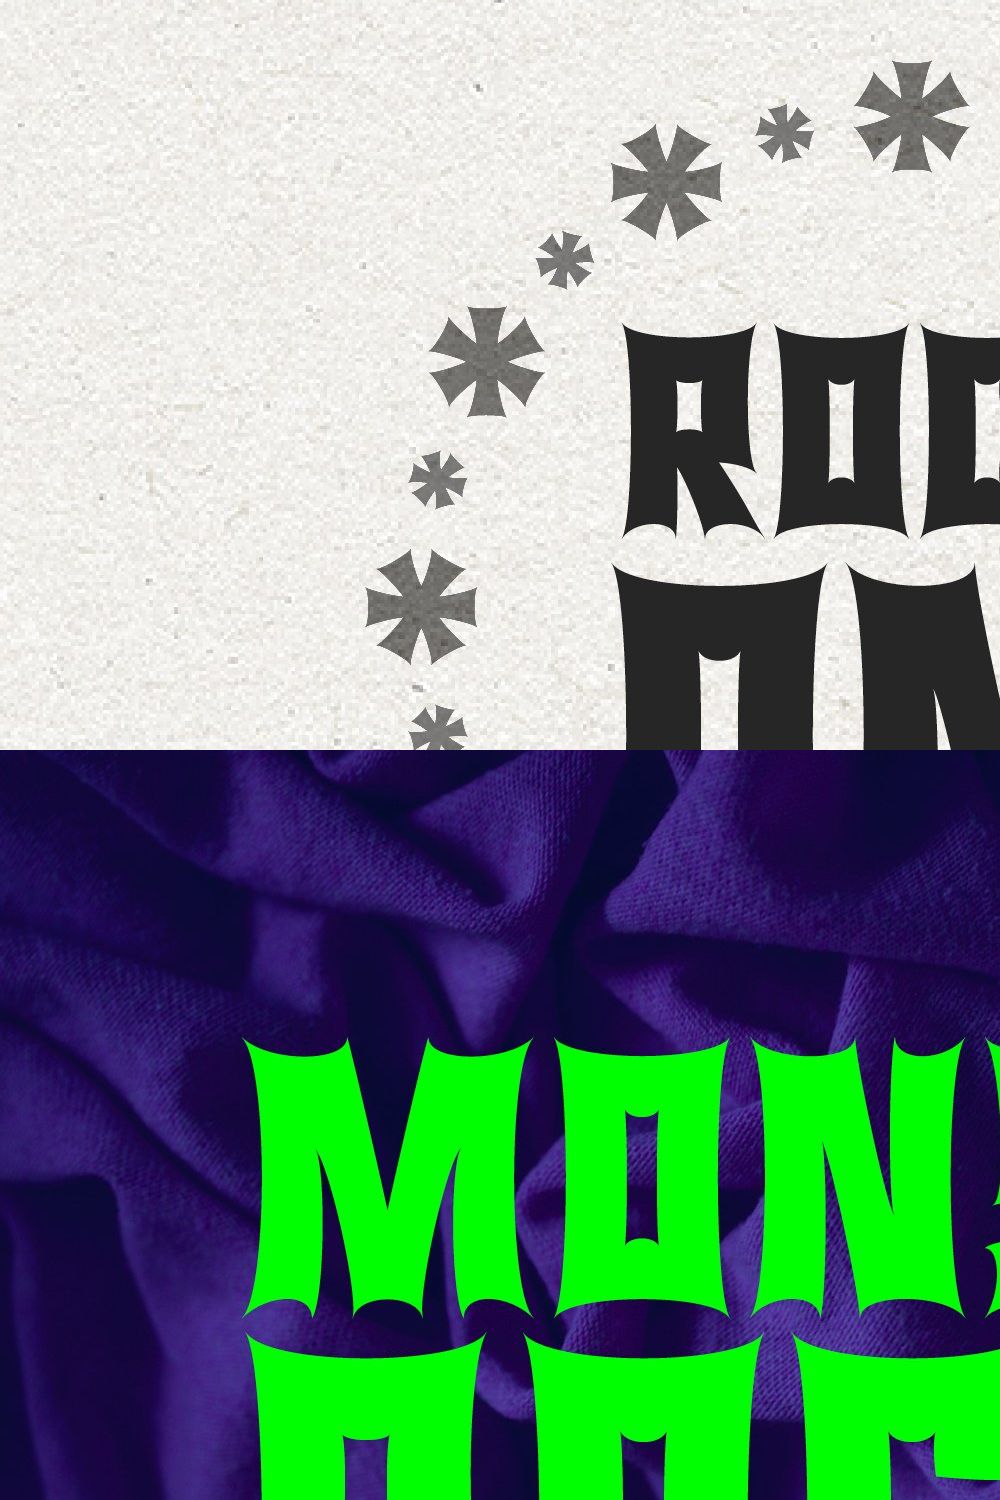 Monsta Rocka - a monster rocker font pinterest preview image.